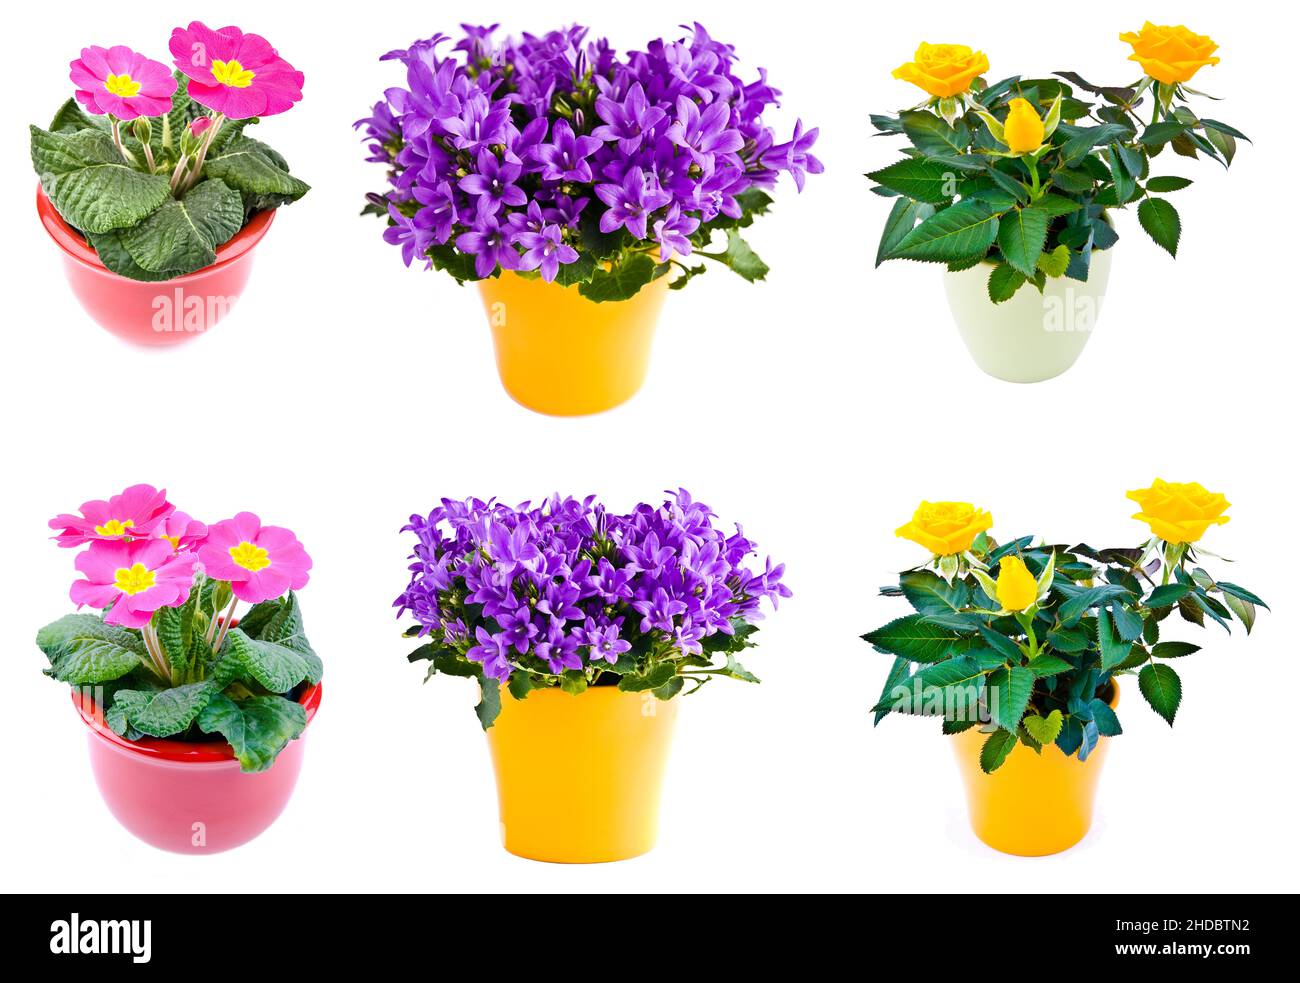 Jarní květiny, petrklíč, zvonky a růže, vysazené do barevných květináčů  Stock Photo - Alamy